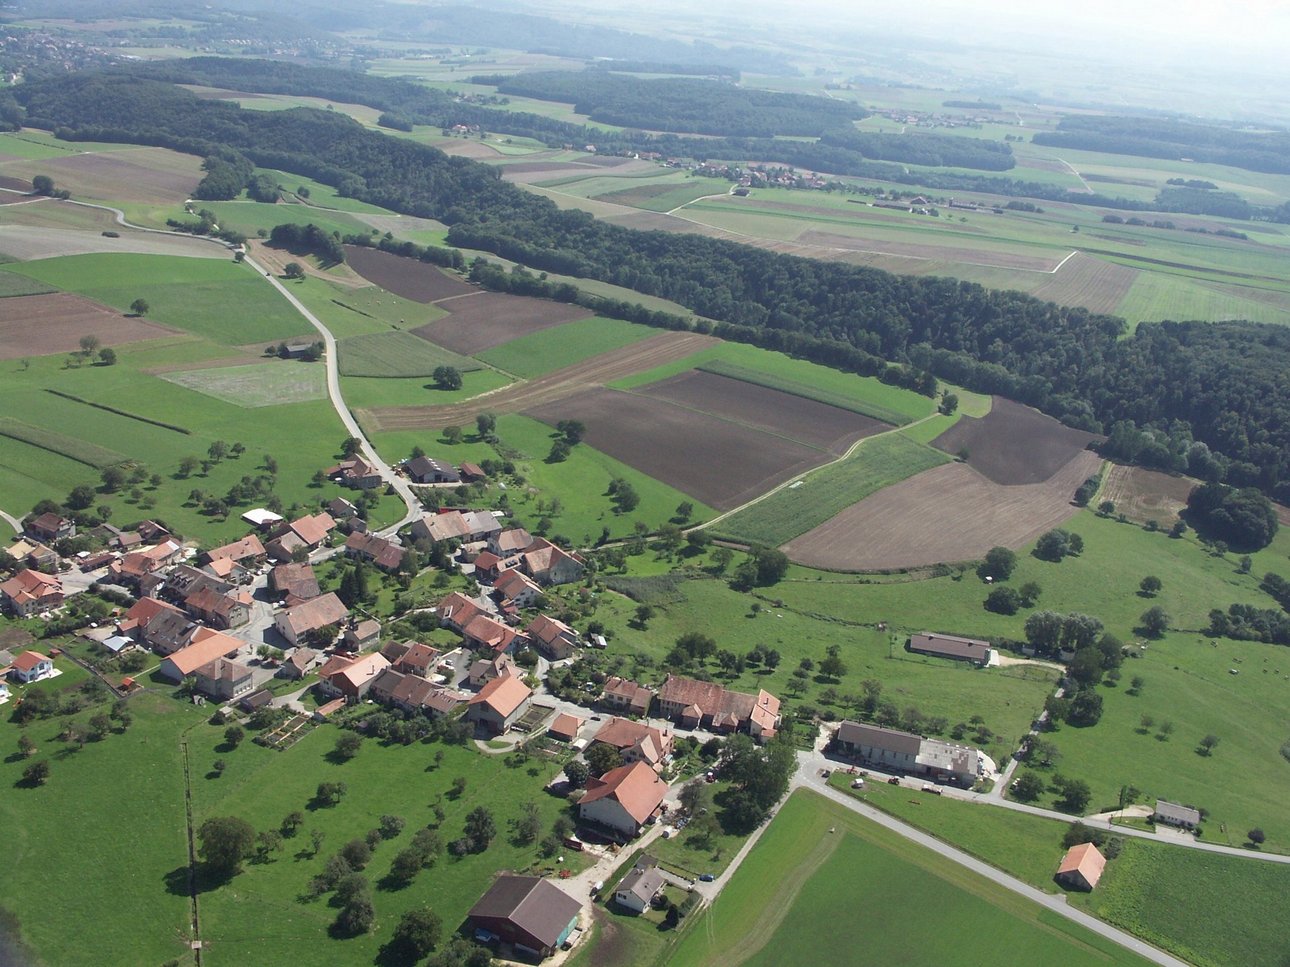 Vue aérienne du village de Moiry sur laquelle on peut observer, outre le village, la couronne de vergers, les champs et les forêts au loin